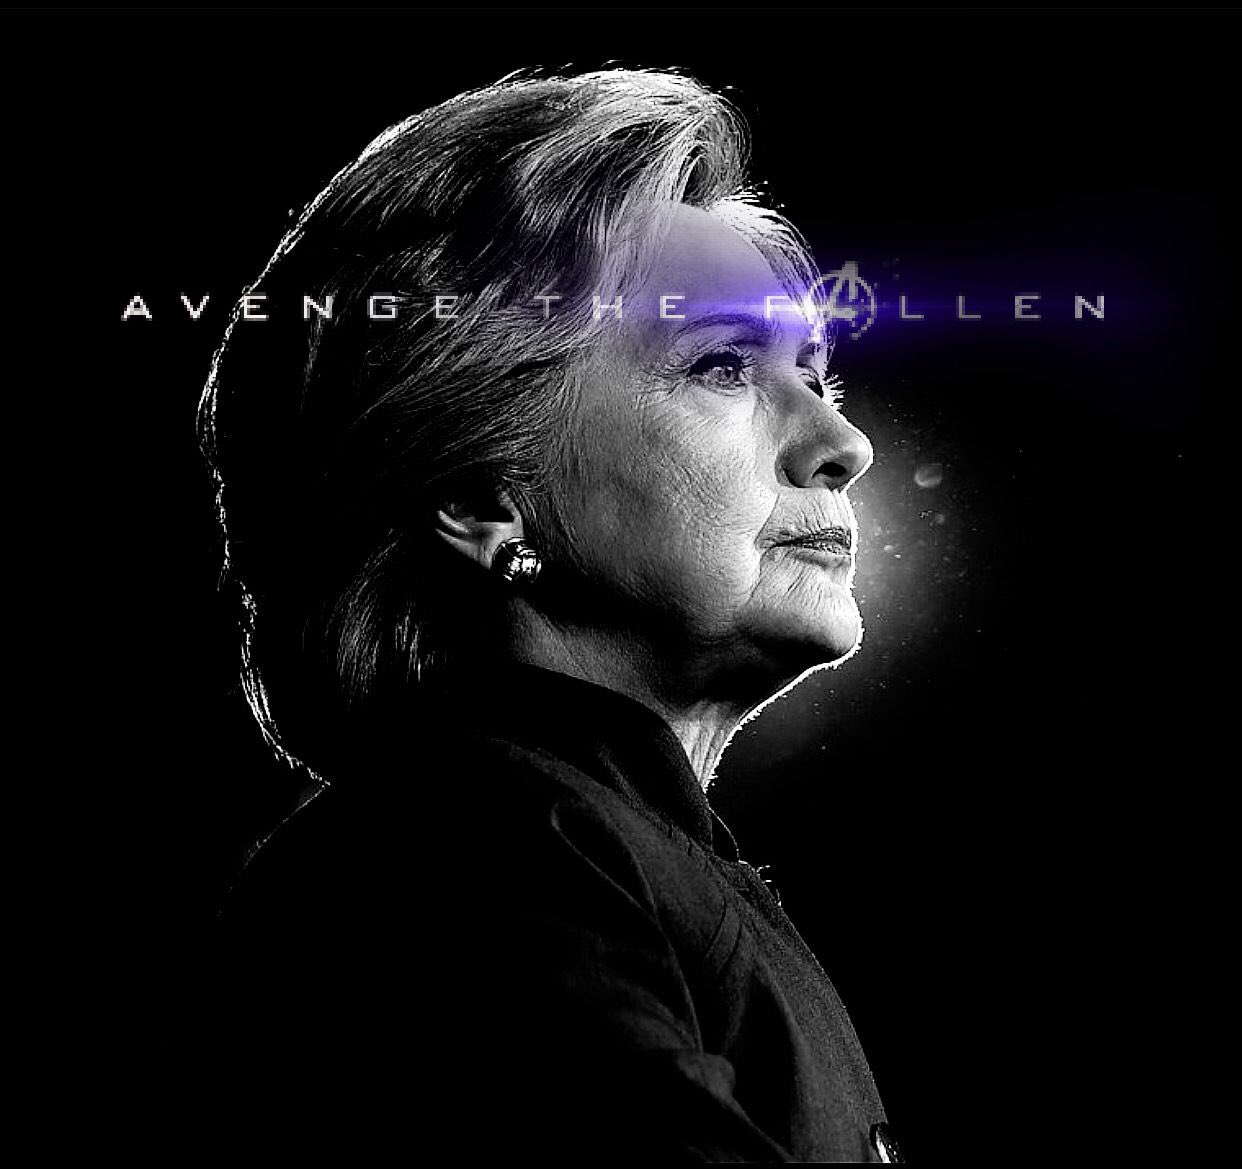 Avengers Endgame: Avenge the Fallen meme poster - Hillary Clinton